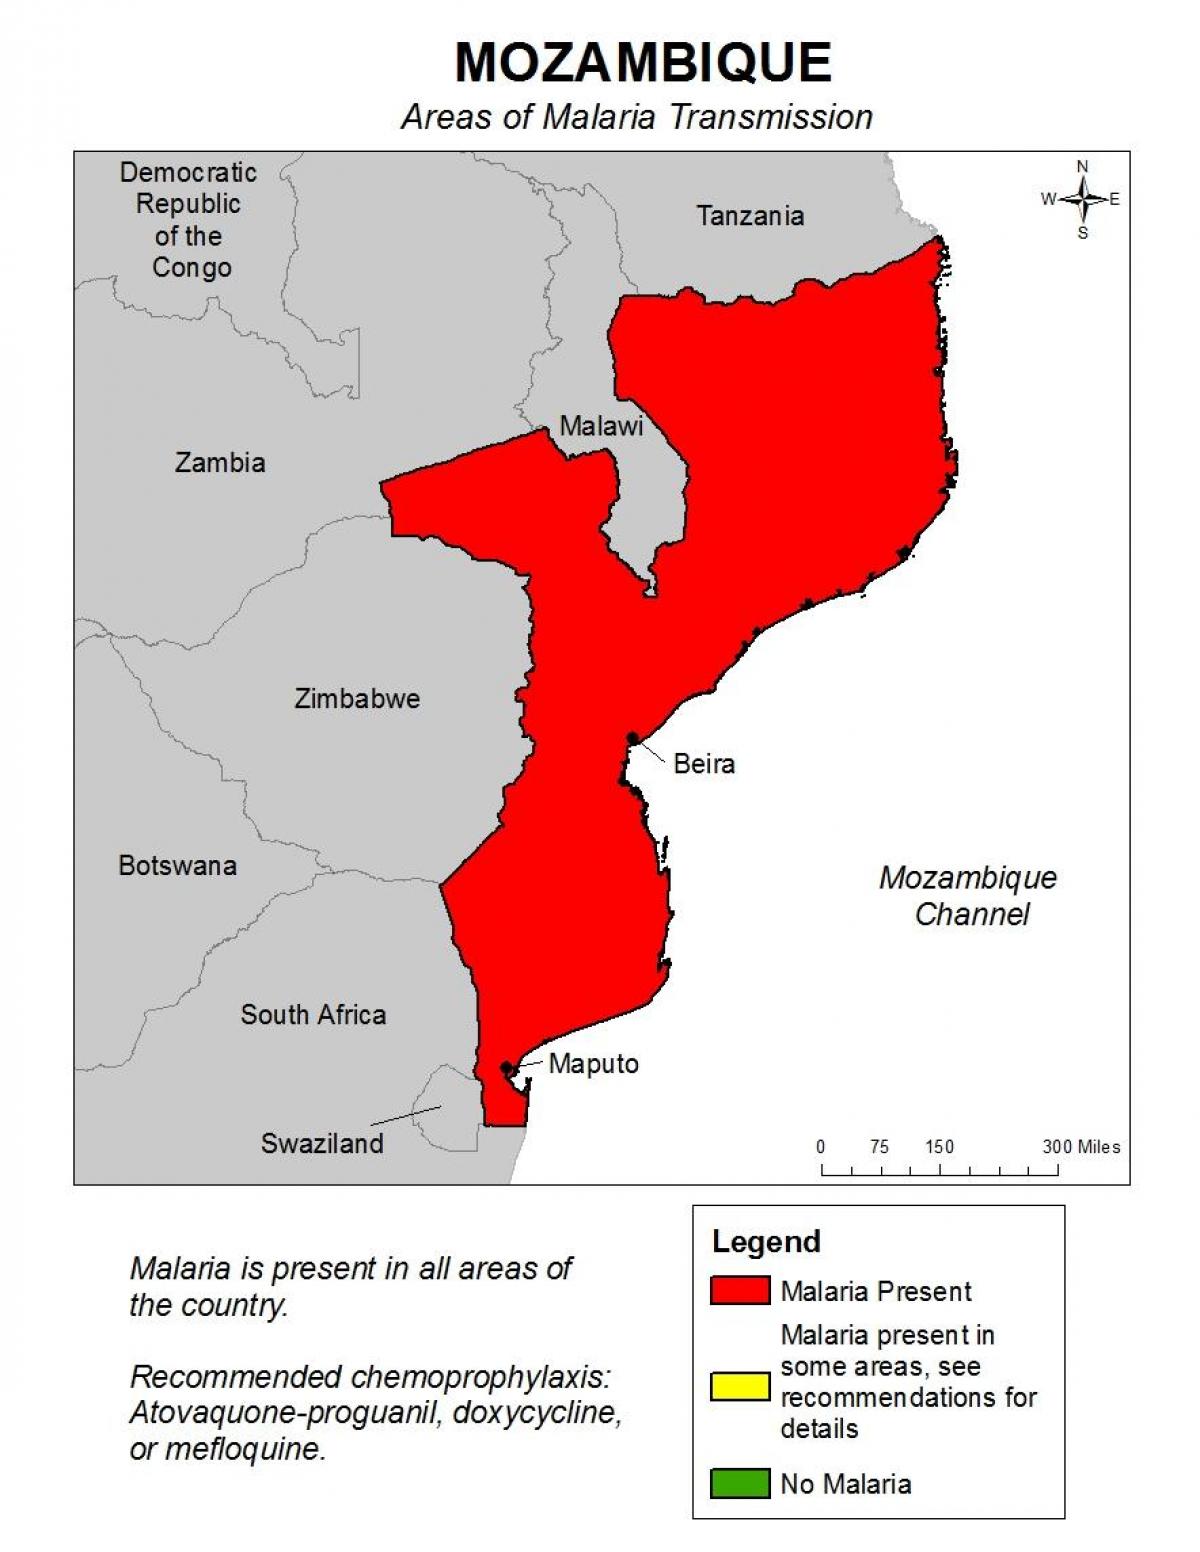 નકશો મોઝામ્બિક મેલેરિયા